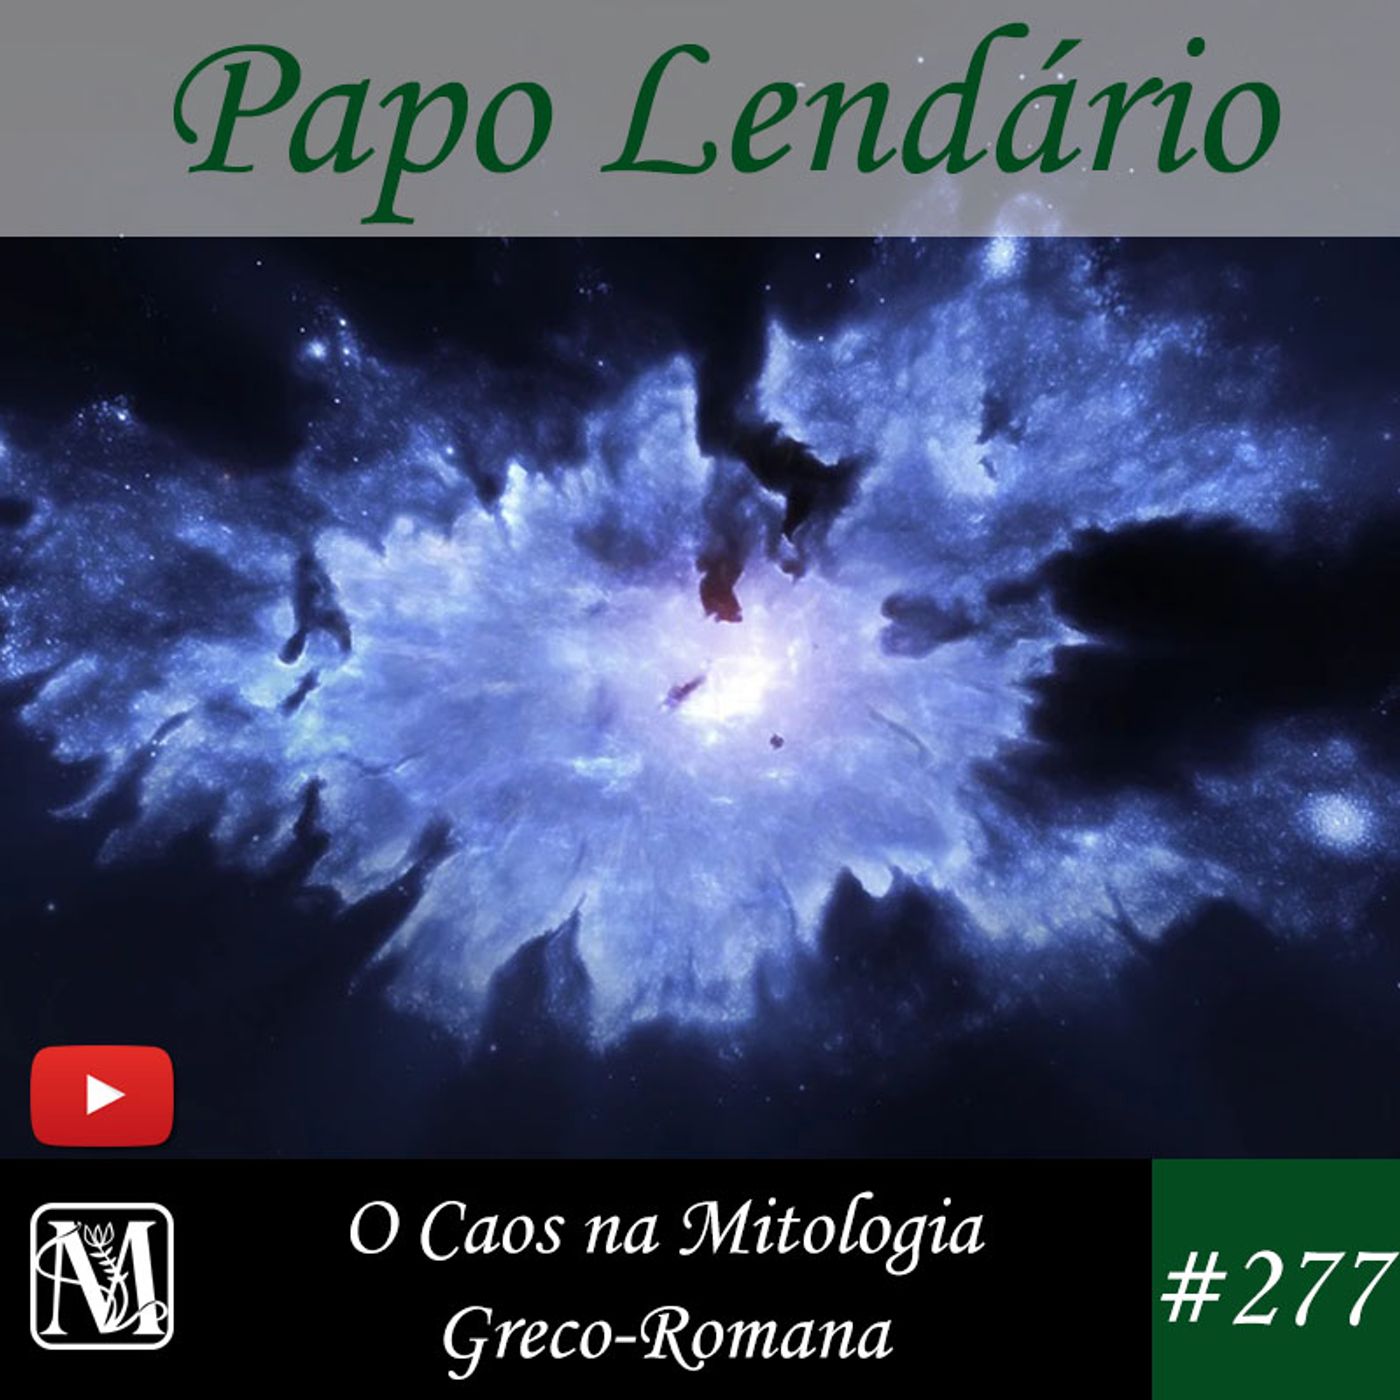 Papo Lendário #277 - O Caos na Mitologia Greco-Romana